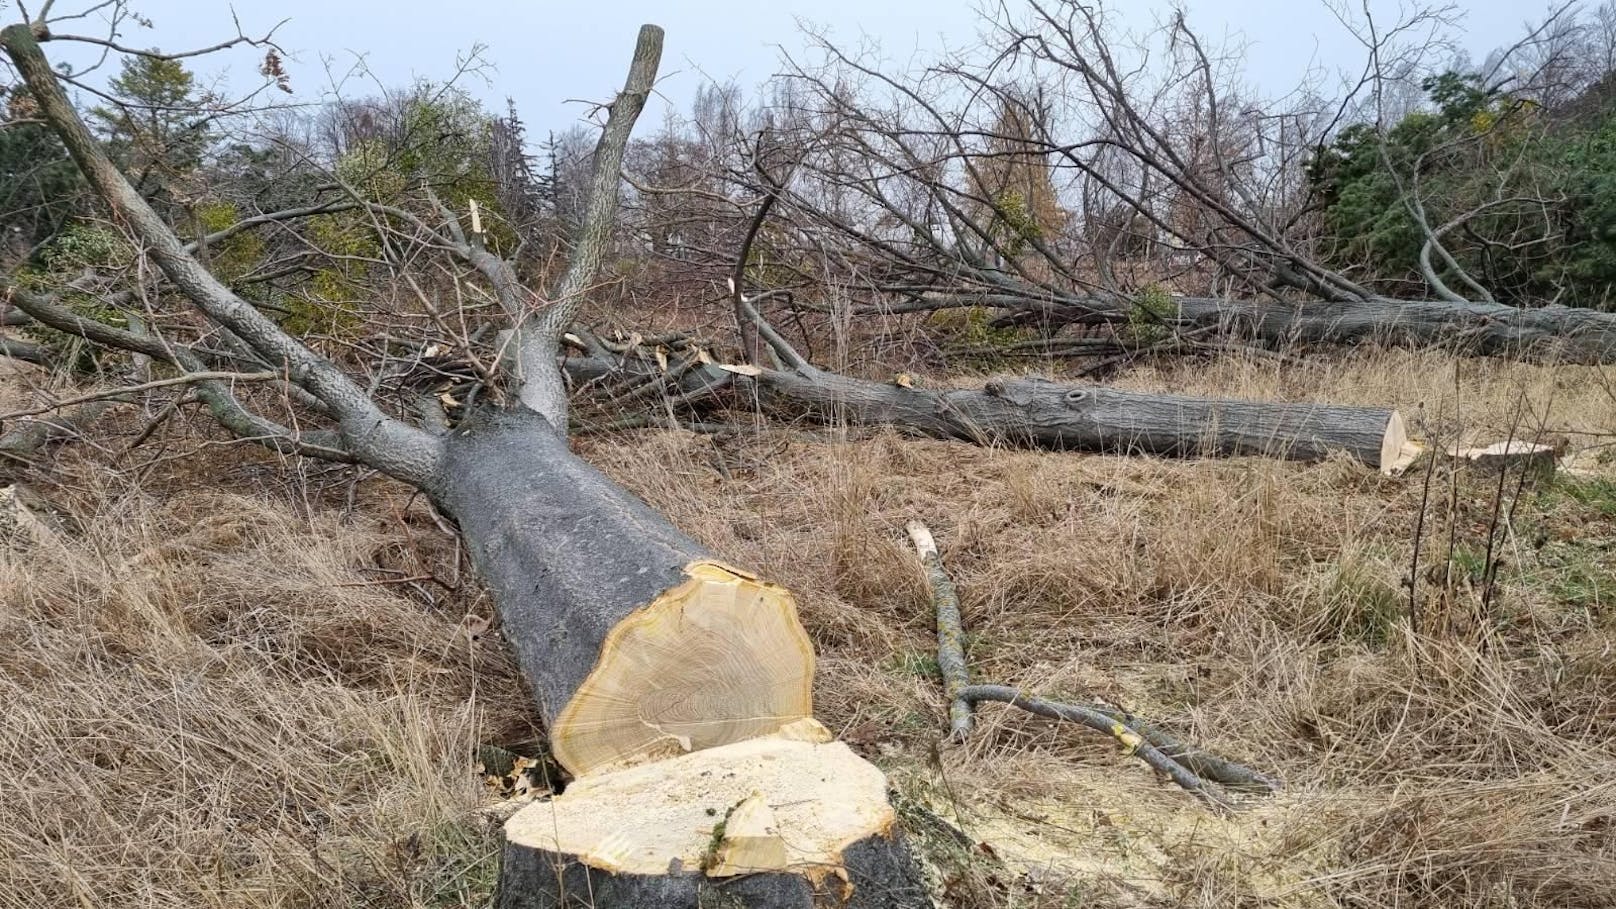 Mann (57) bei Waldarbeiten von Baum getroffen - tot